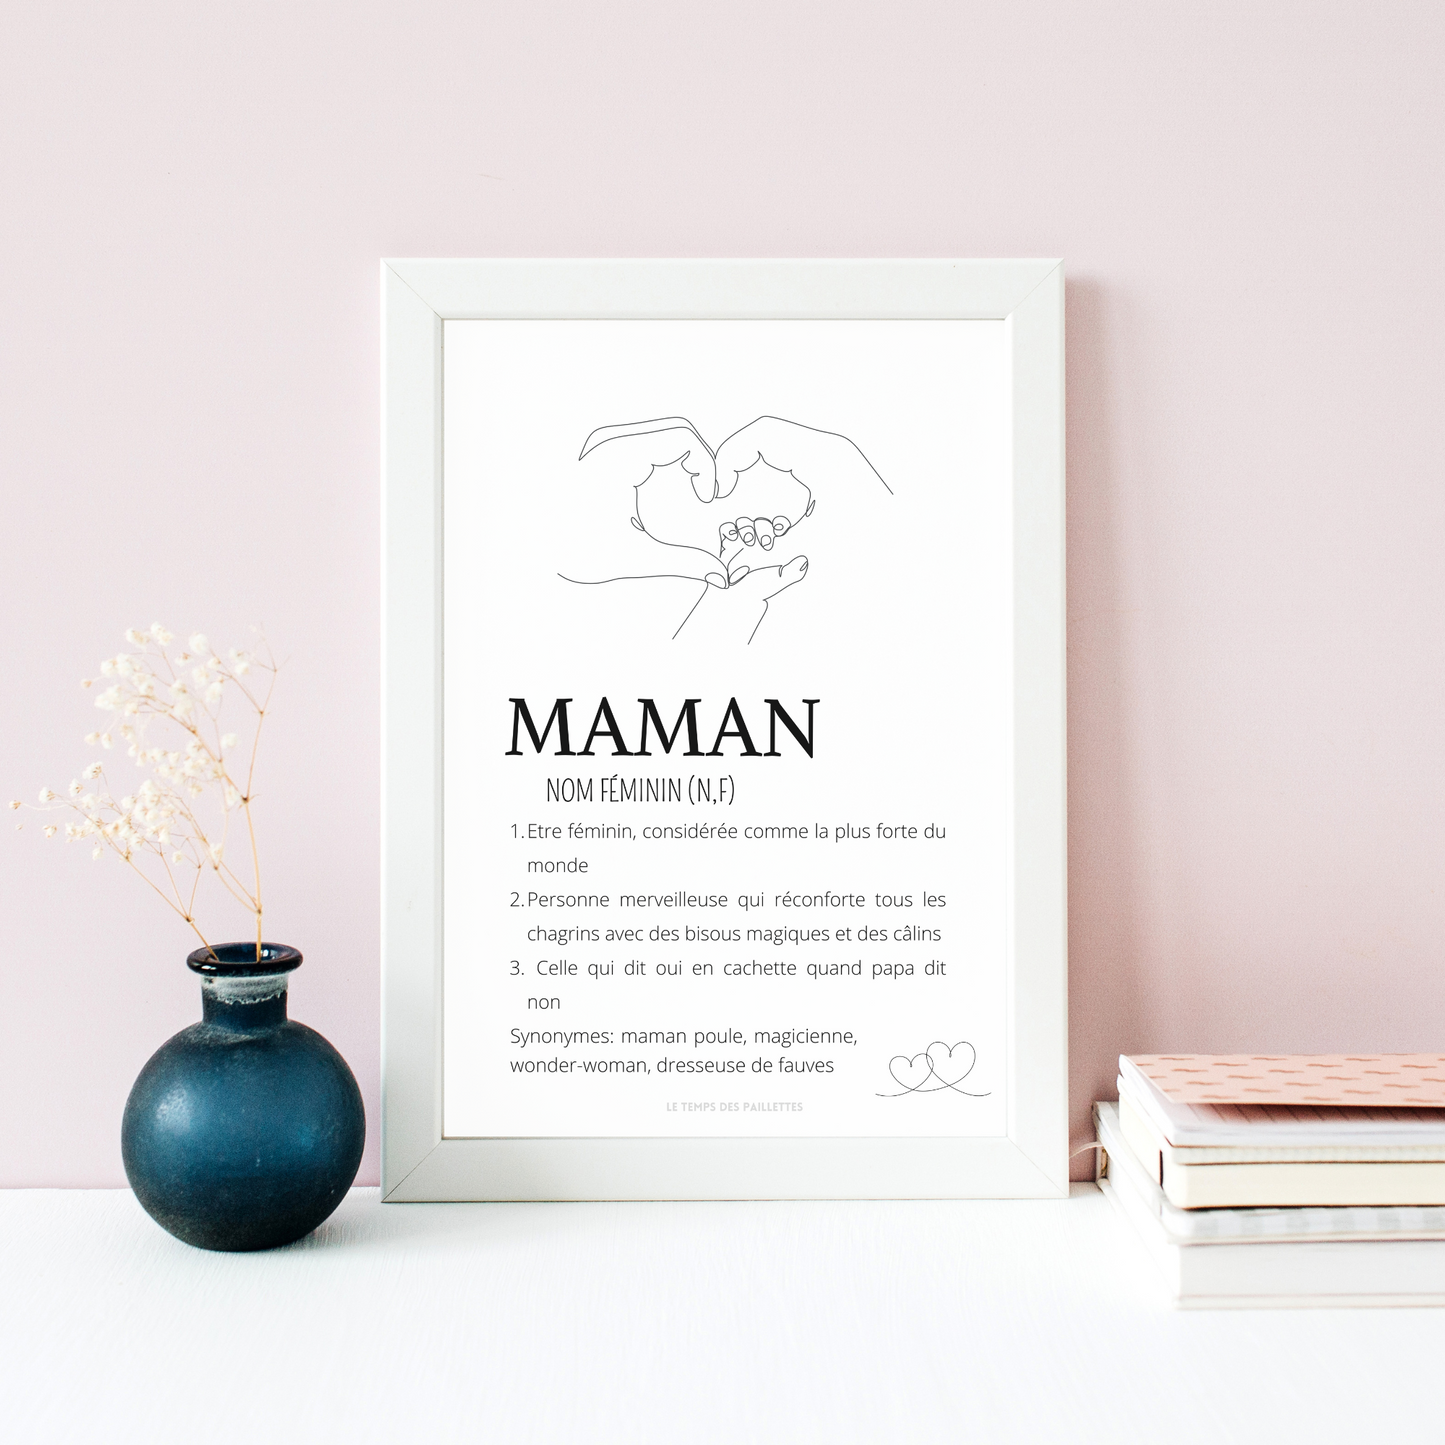 Affiche Définition maman personnalisée - Poster maman personnalisé - Cadeau personnalisé maman  par Le Temps des Paillettes